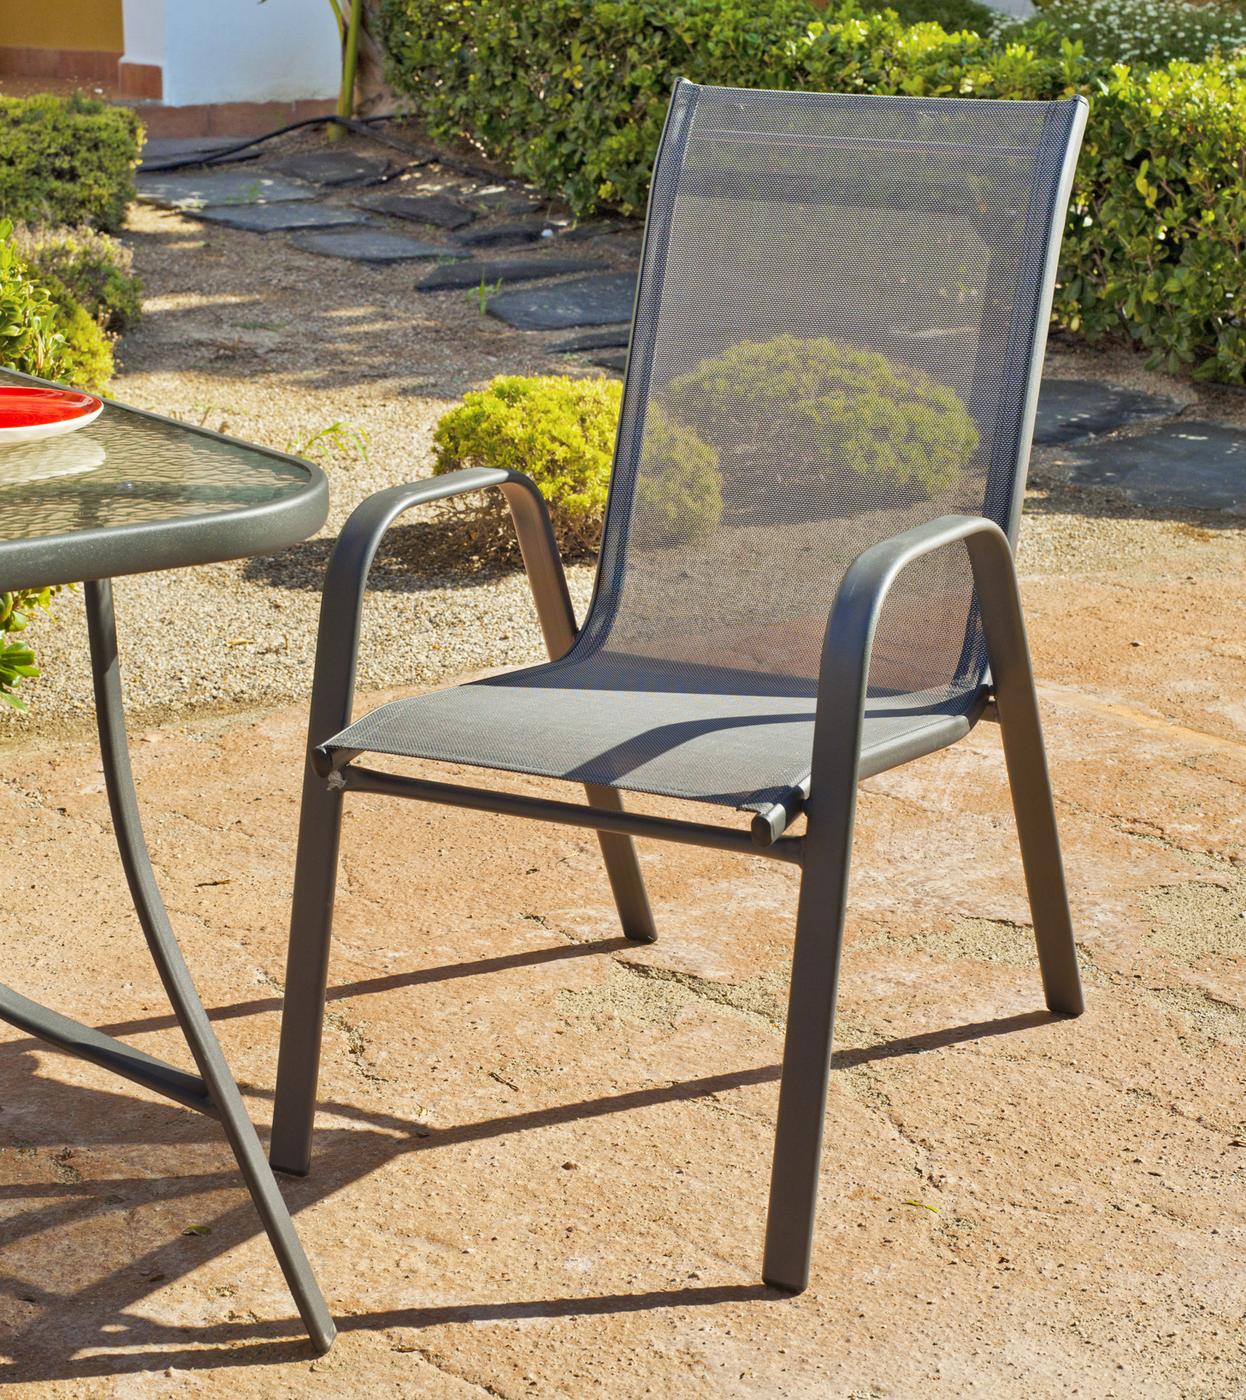 Conjunto Acero Sulam 120-4 - Conjunto de acero color antracita: mesa redonda de 120 cm, con tapa de cristal templado + 4 sillones apilables de acero y textilen